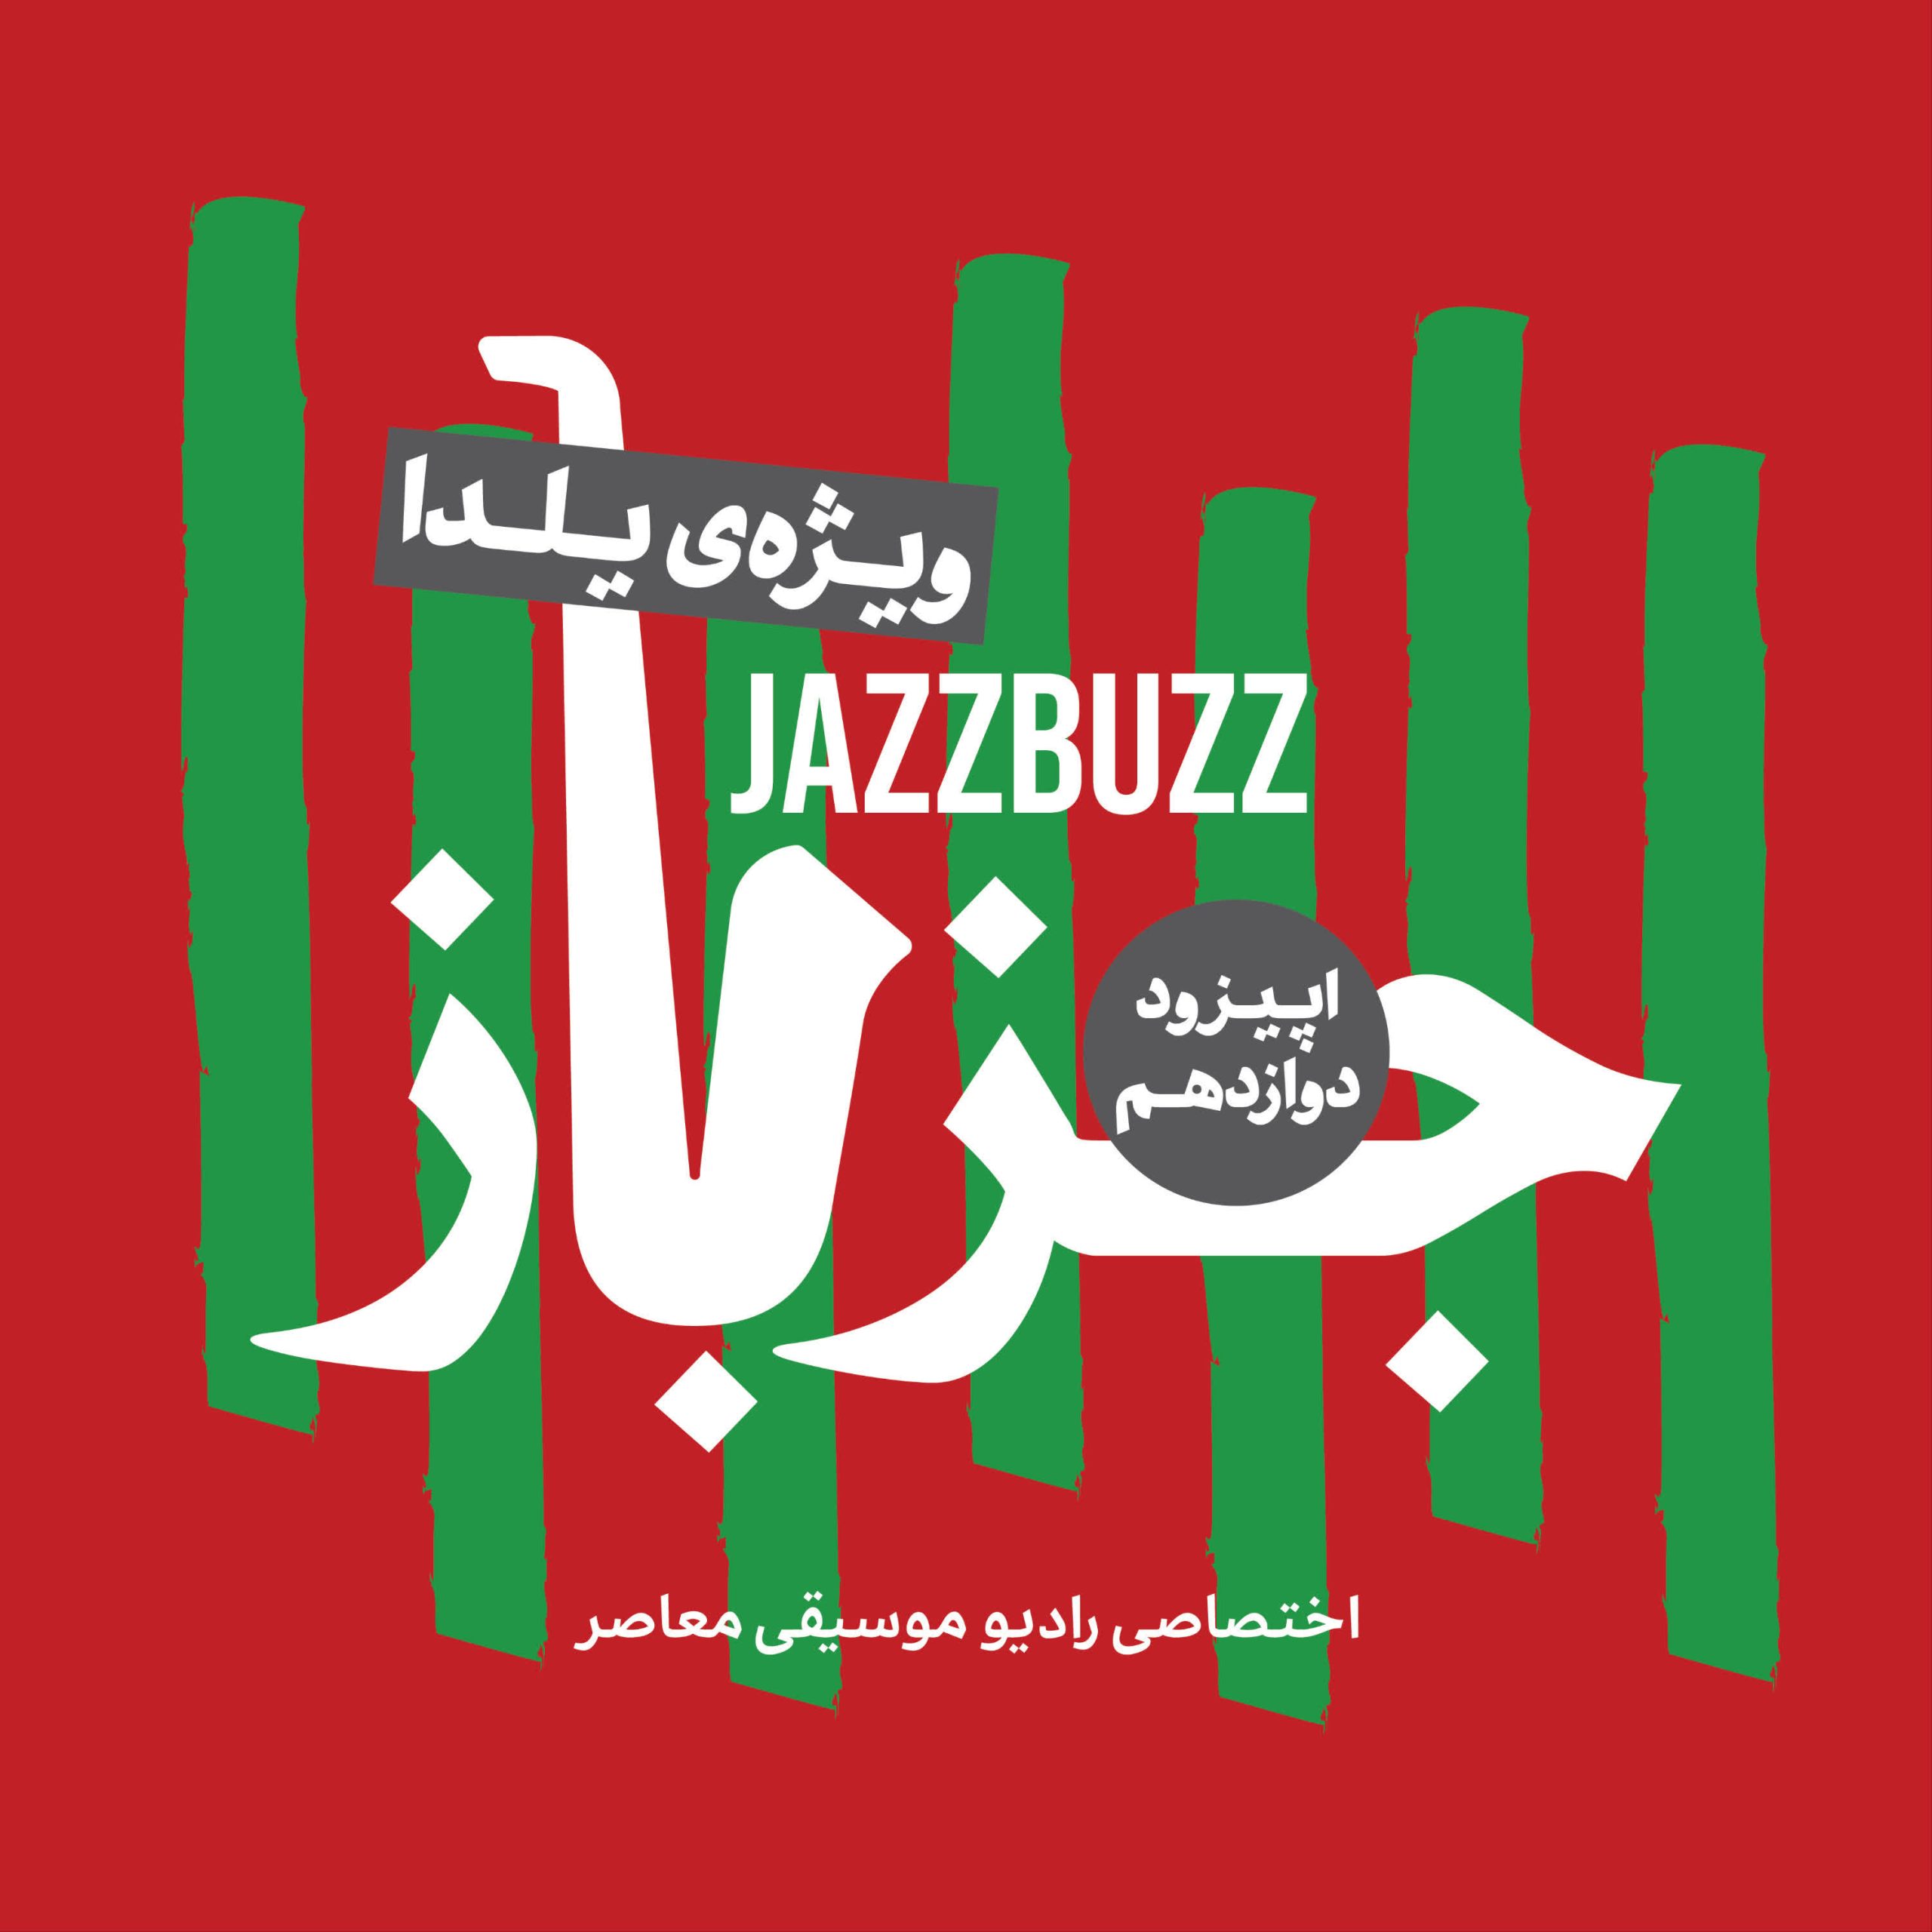 JazzBuzz 12 scaled